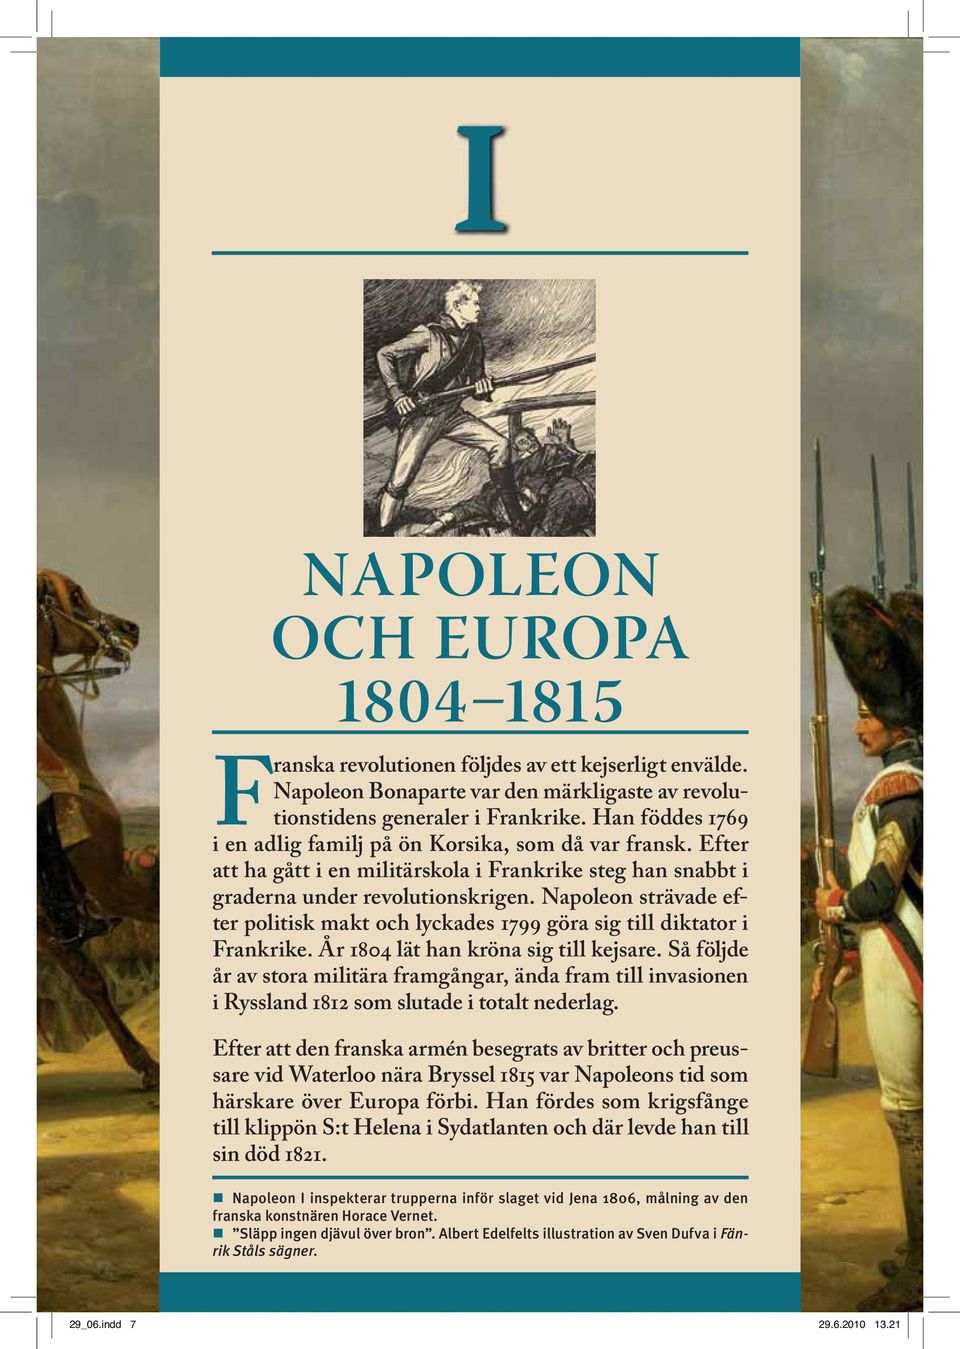 Napoleon strävade efter politisk makt och lyckades 1799 göra sig till diktator i Frankrike. År 1804 lät han kröna sig till kejsare.